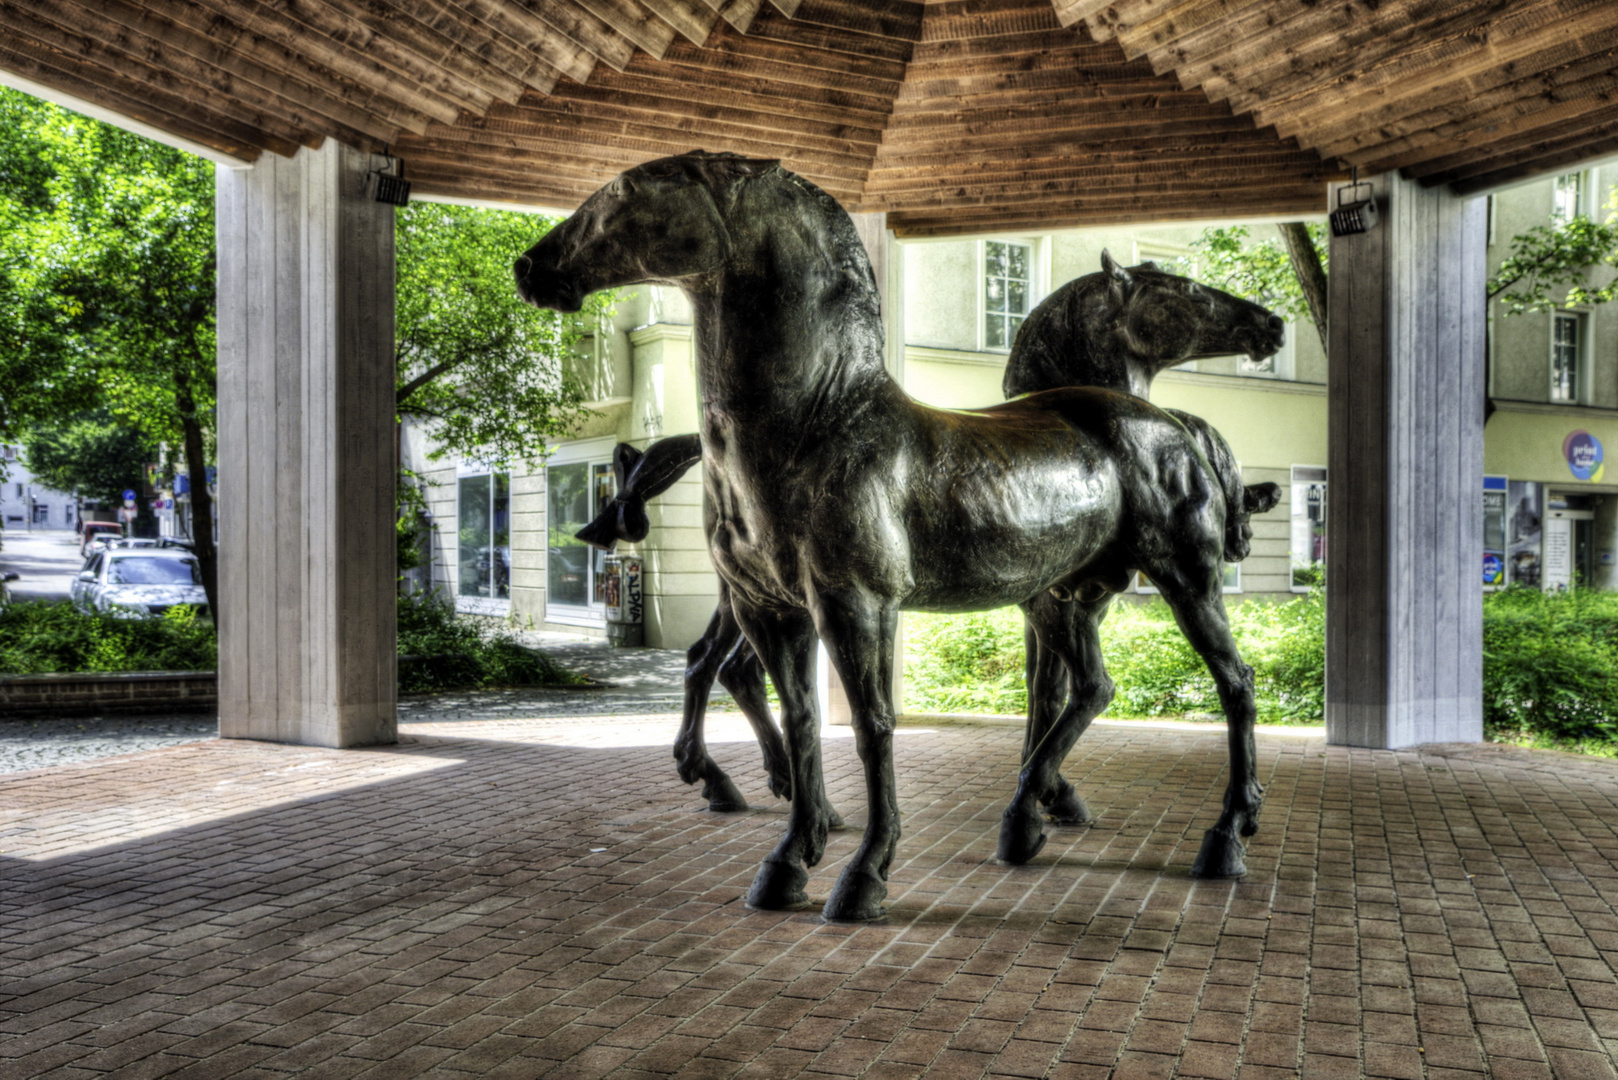 HDR - Bildserien von zwei Pferde.Skulpturen in München am Perde-Markten